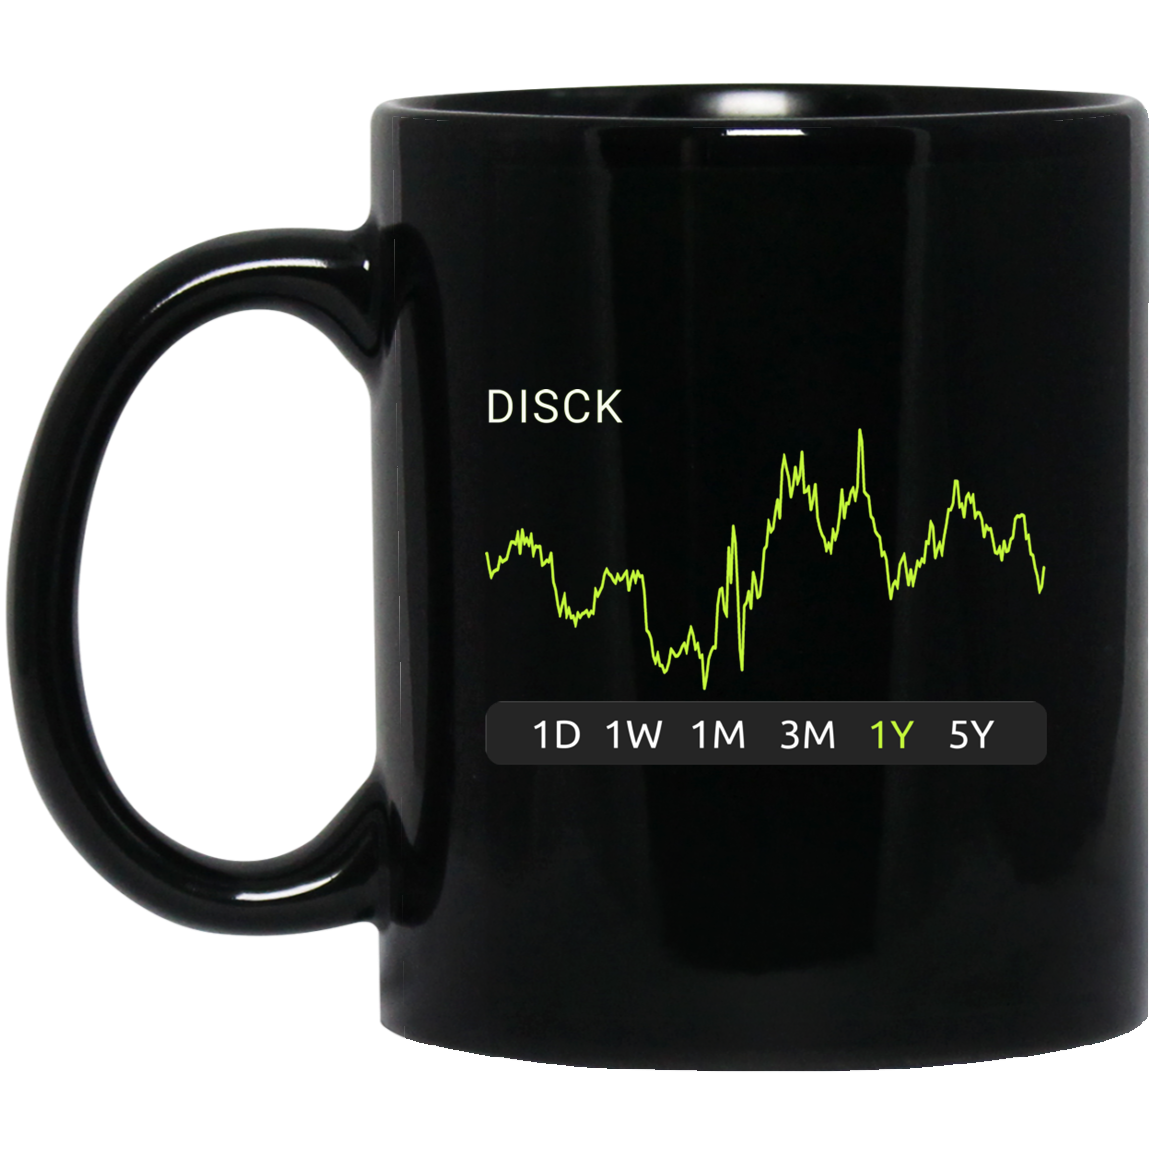 DISCK Stock 1y Mug